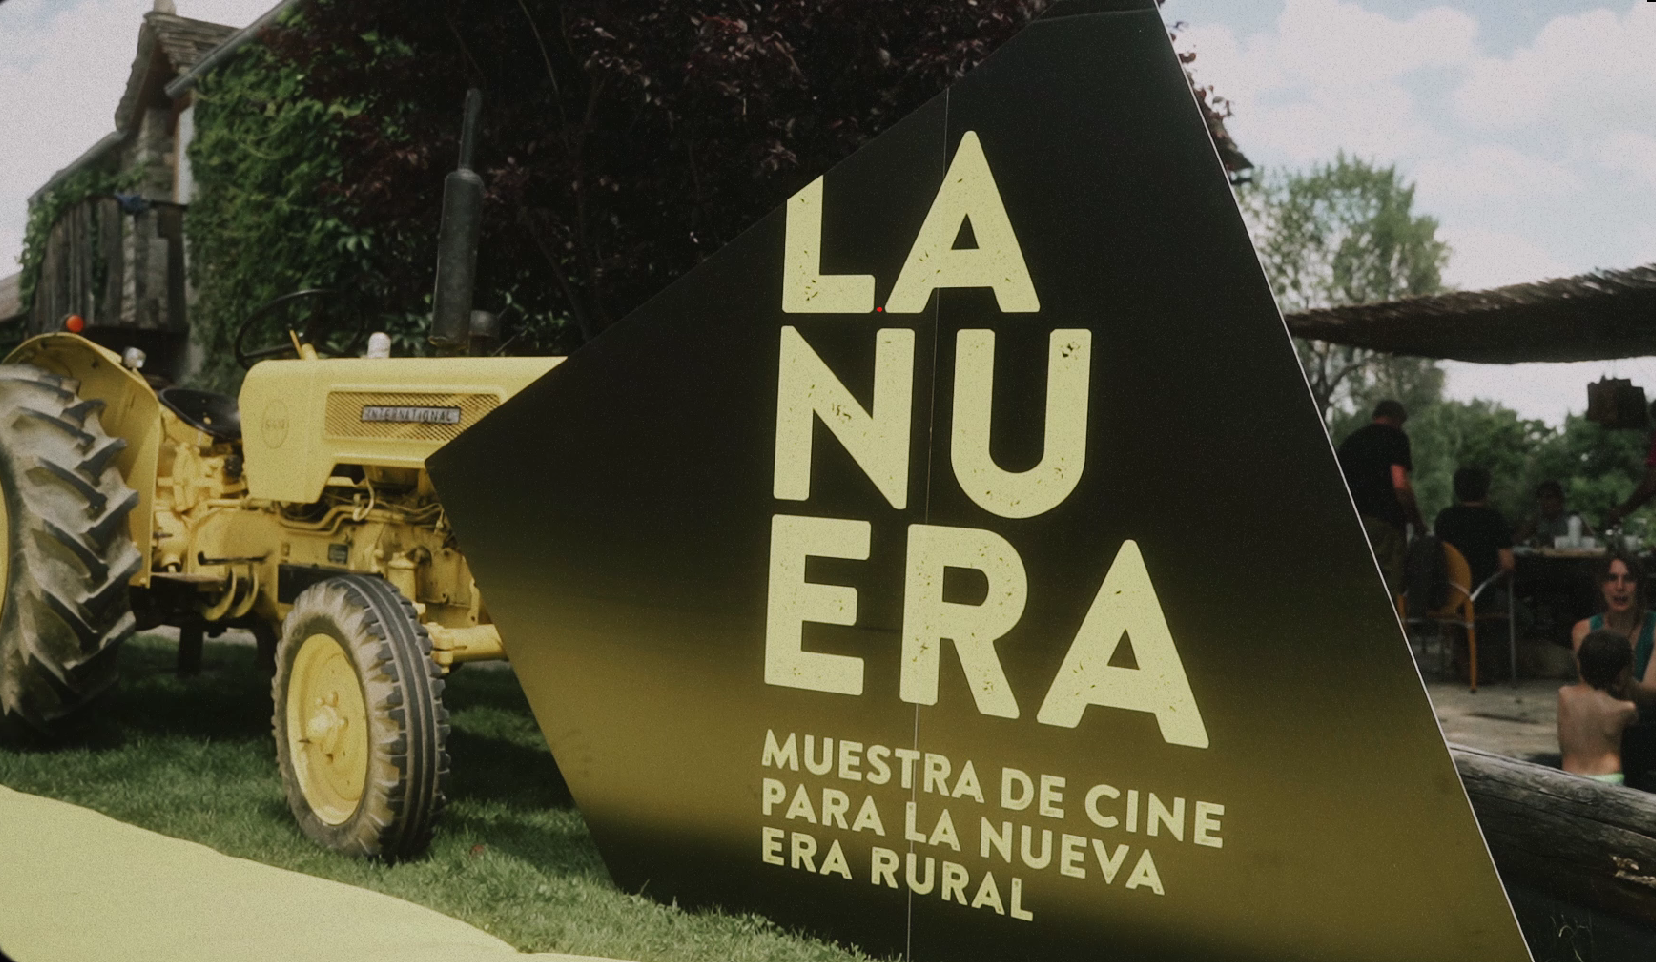 El pueblo de Ara se prepara para acoger La NuEra, Muestra de cine para la Nueva Era Rural